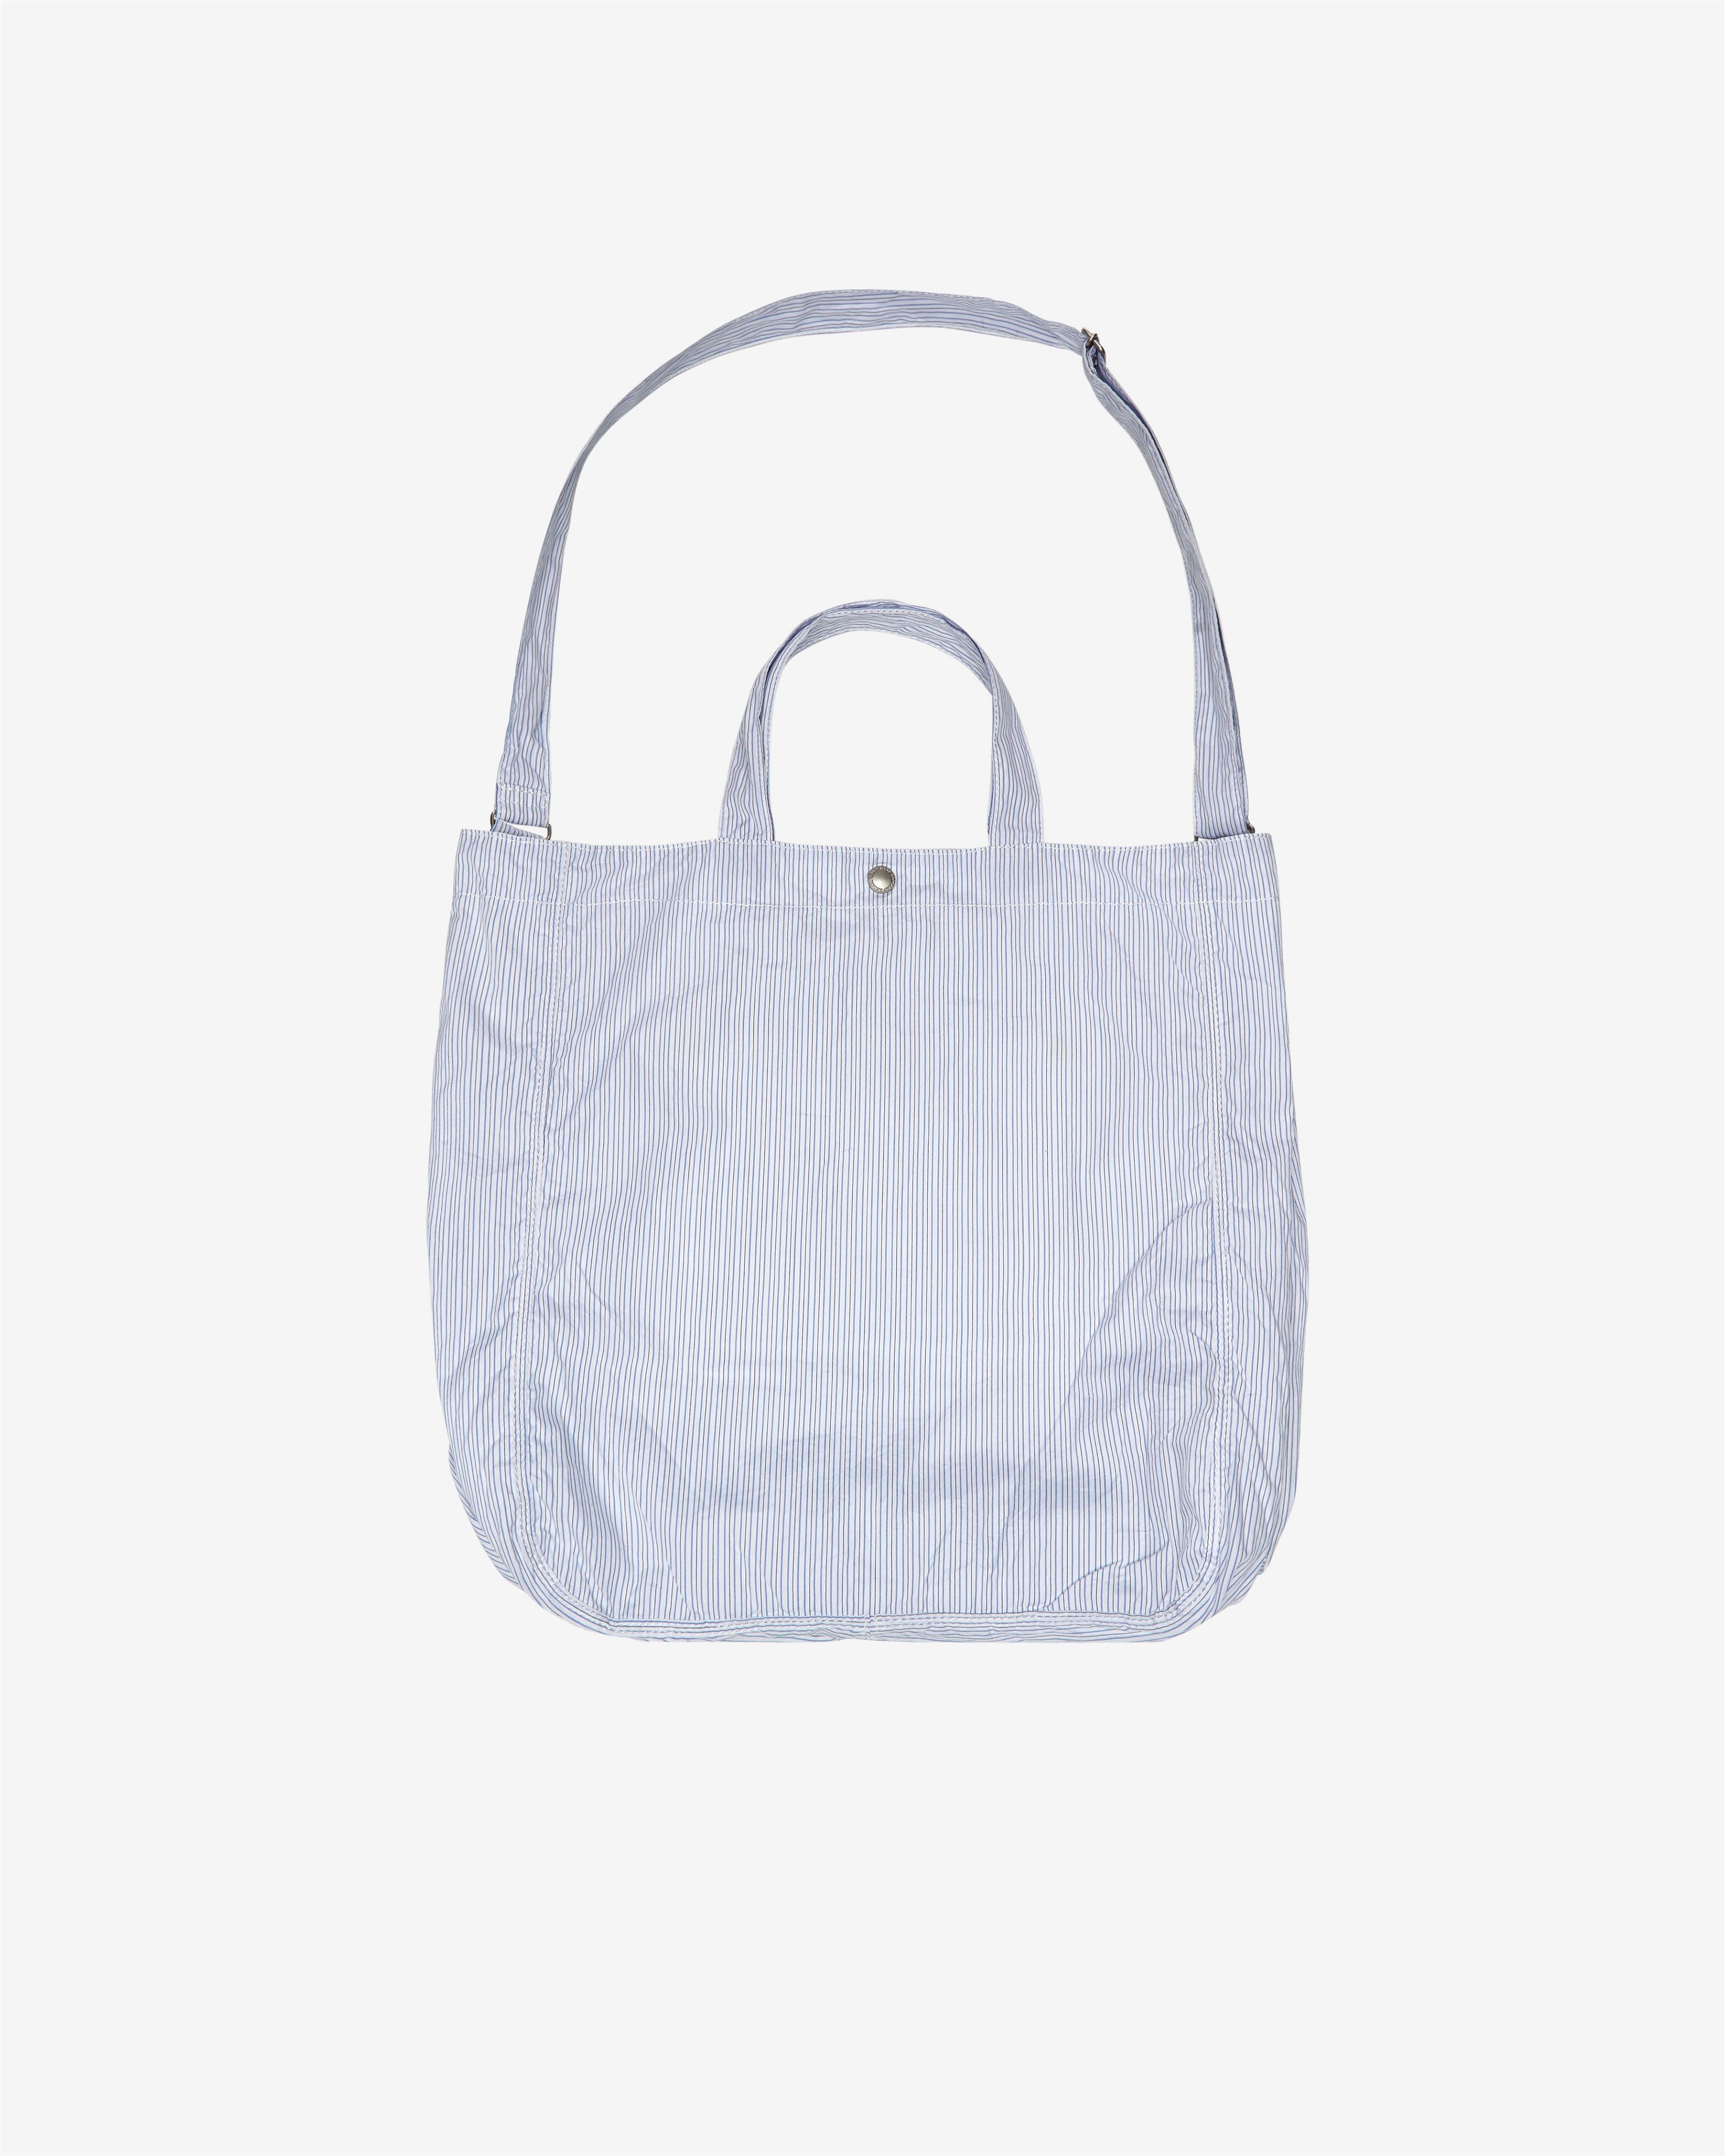 Comme des Garçons Homme - Cotton Tote Bag - (White/Blue) by HOMME